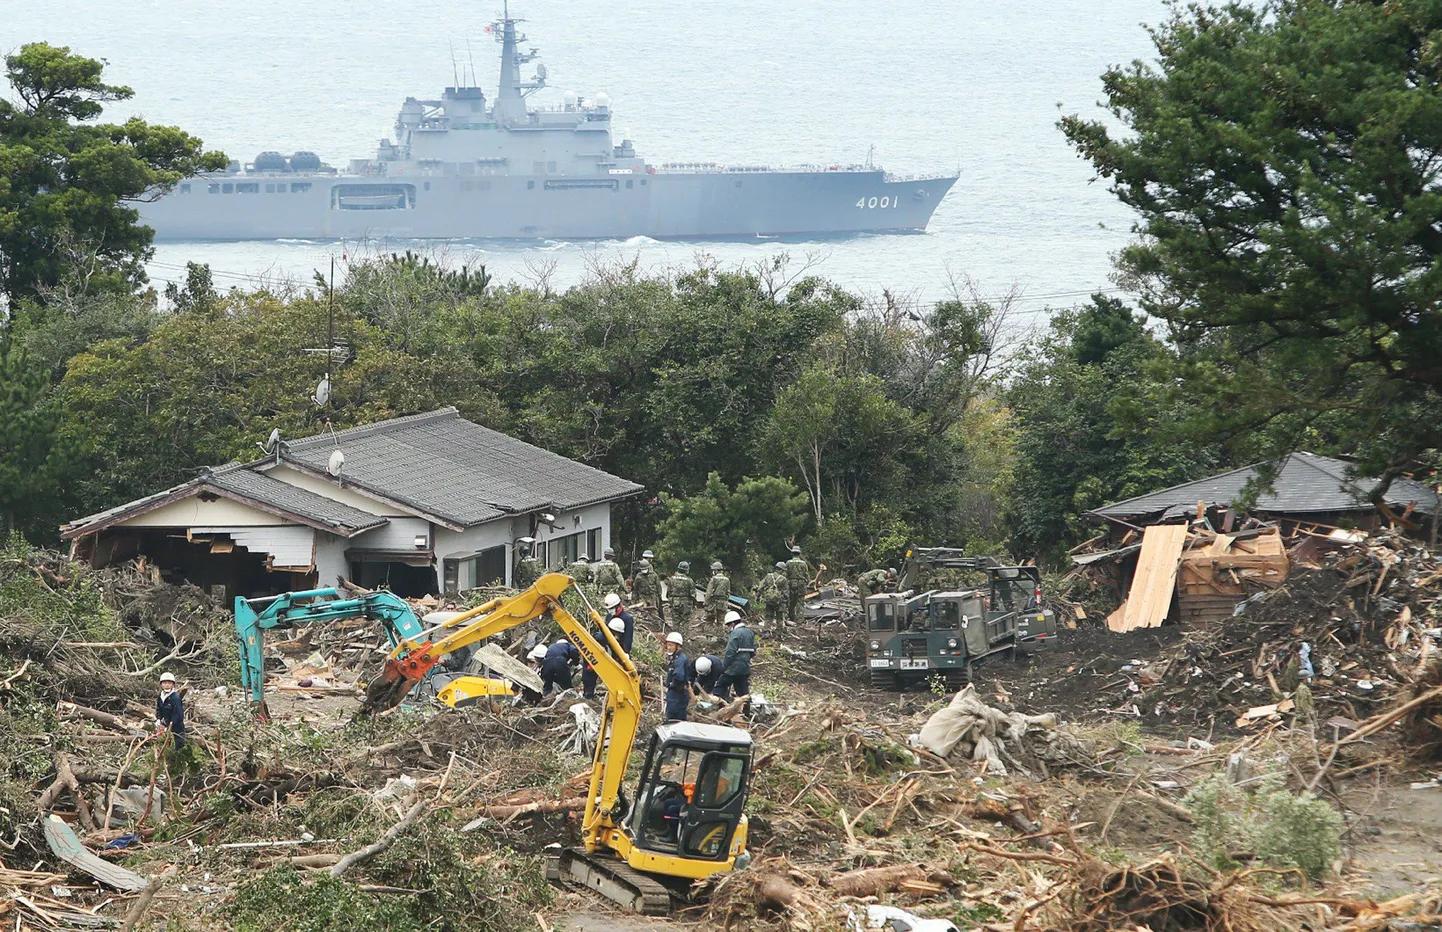 Jaapani sõdurid koristavad maalihkes purunenud majadest tekkinud sodi Oshima saarel.